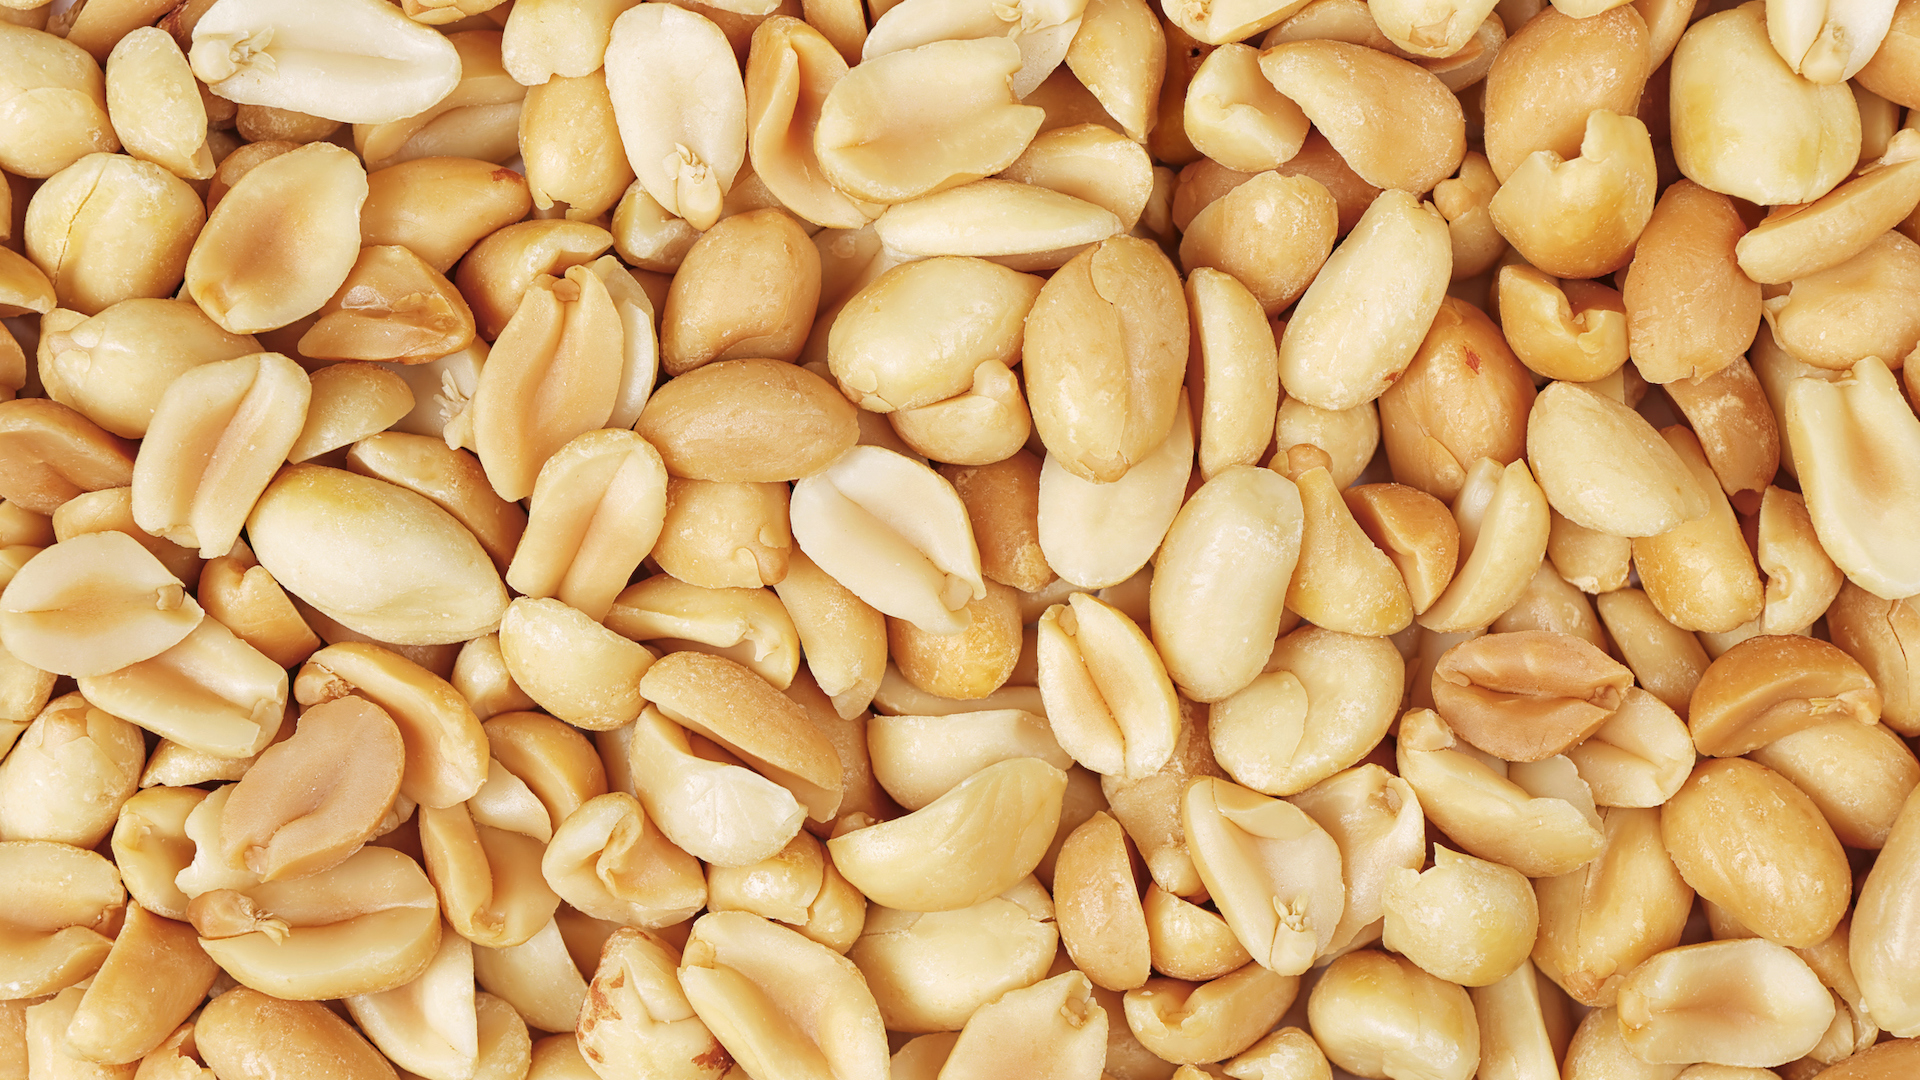 A big pile of peanuts